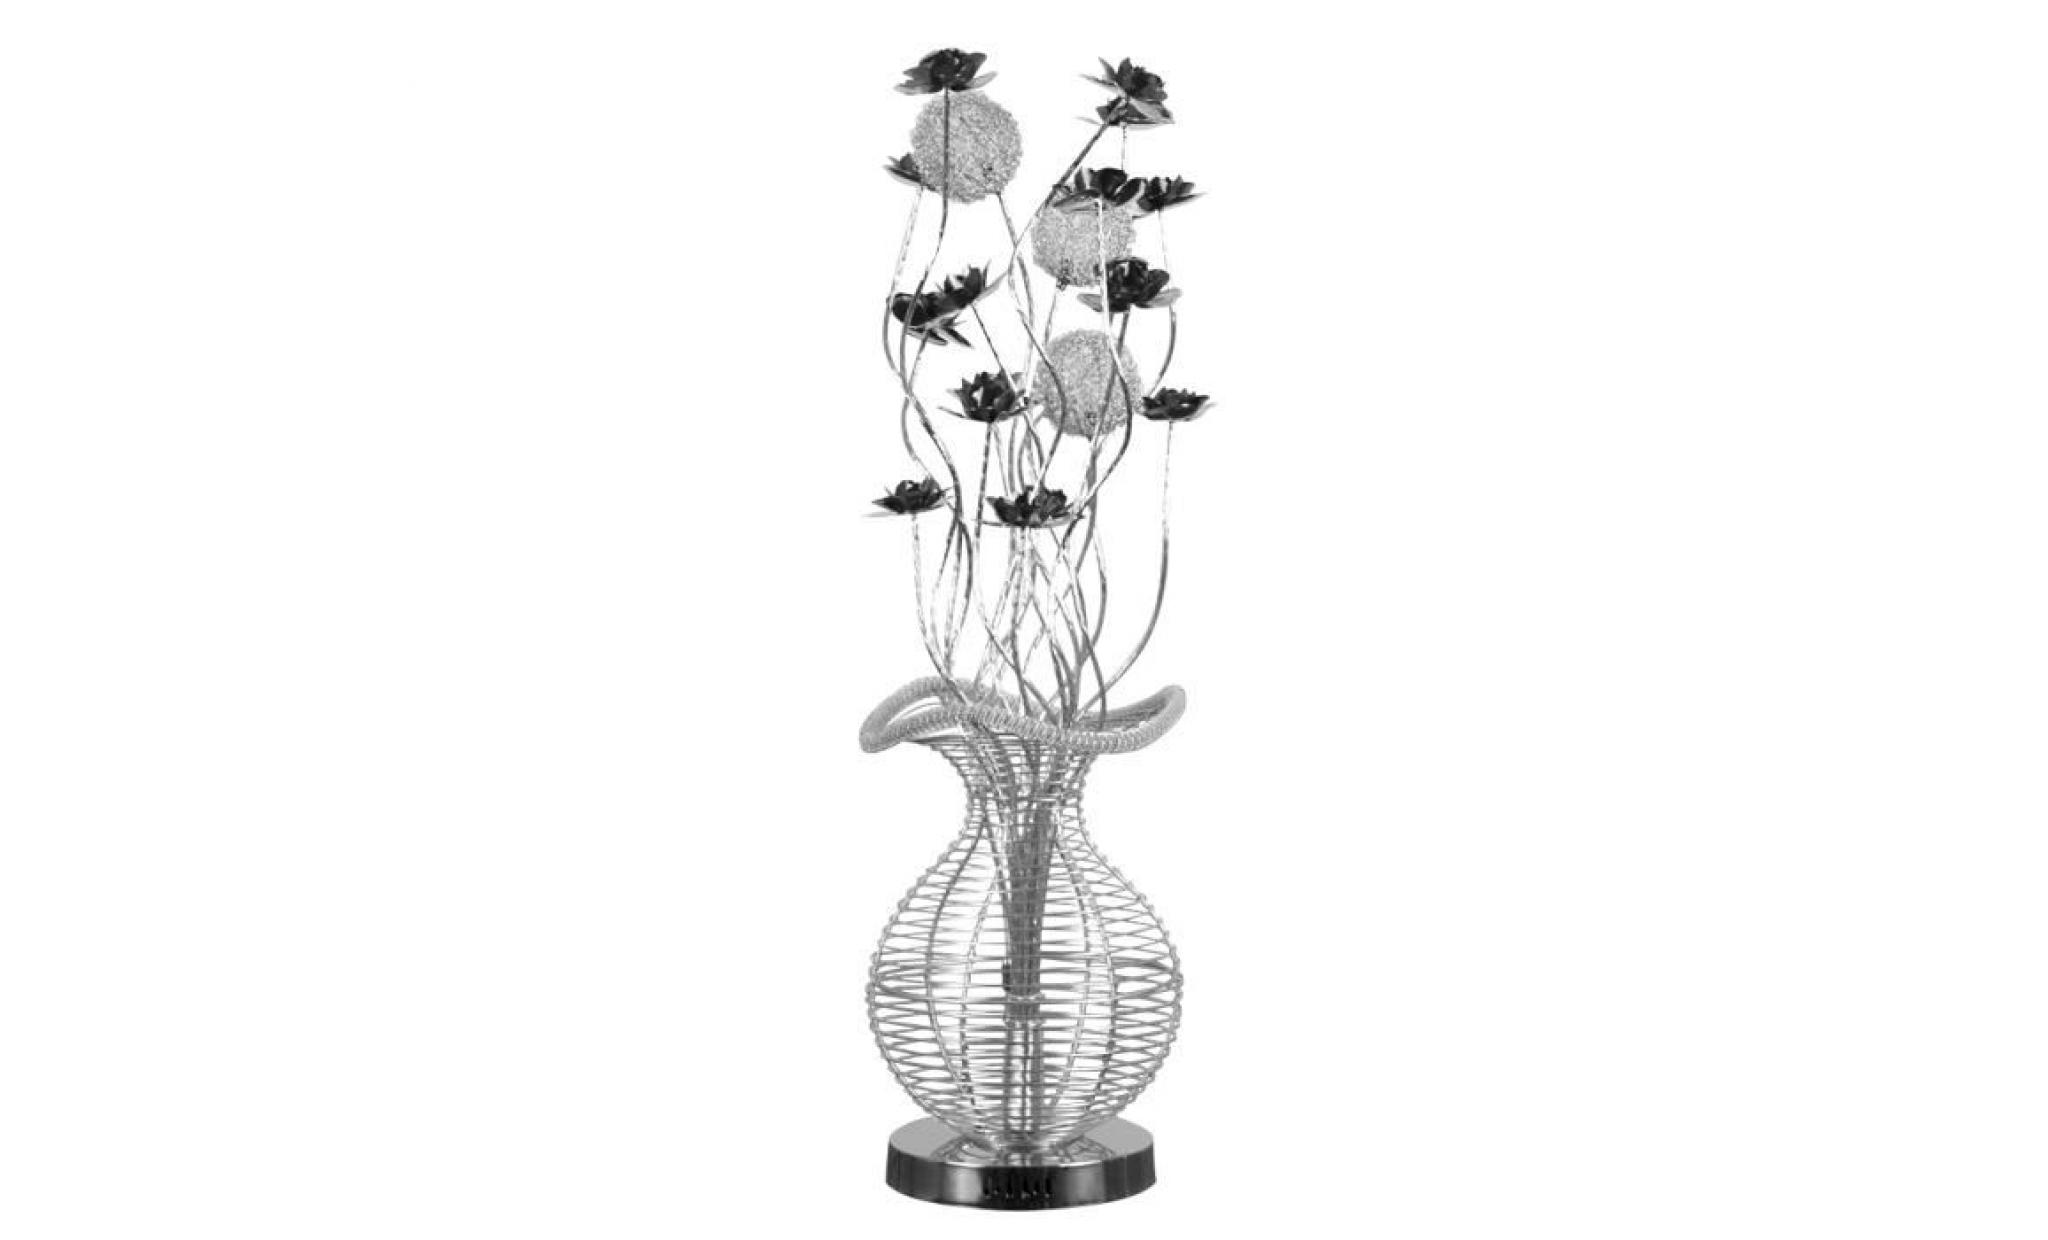 lampadaire moderne et élégant. vase fabrique en aluminium argenté décoré avec fleurs noirs